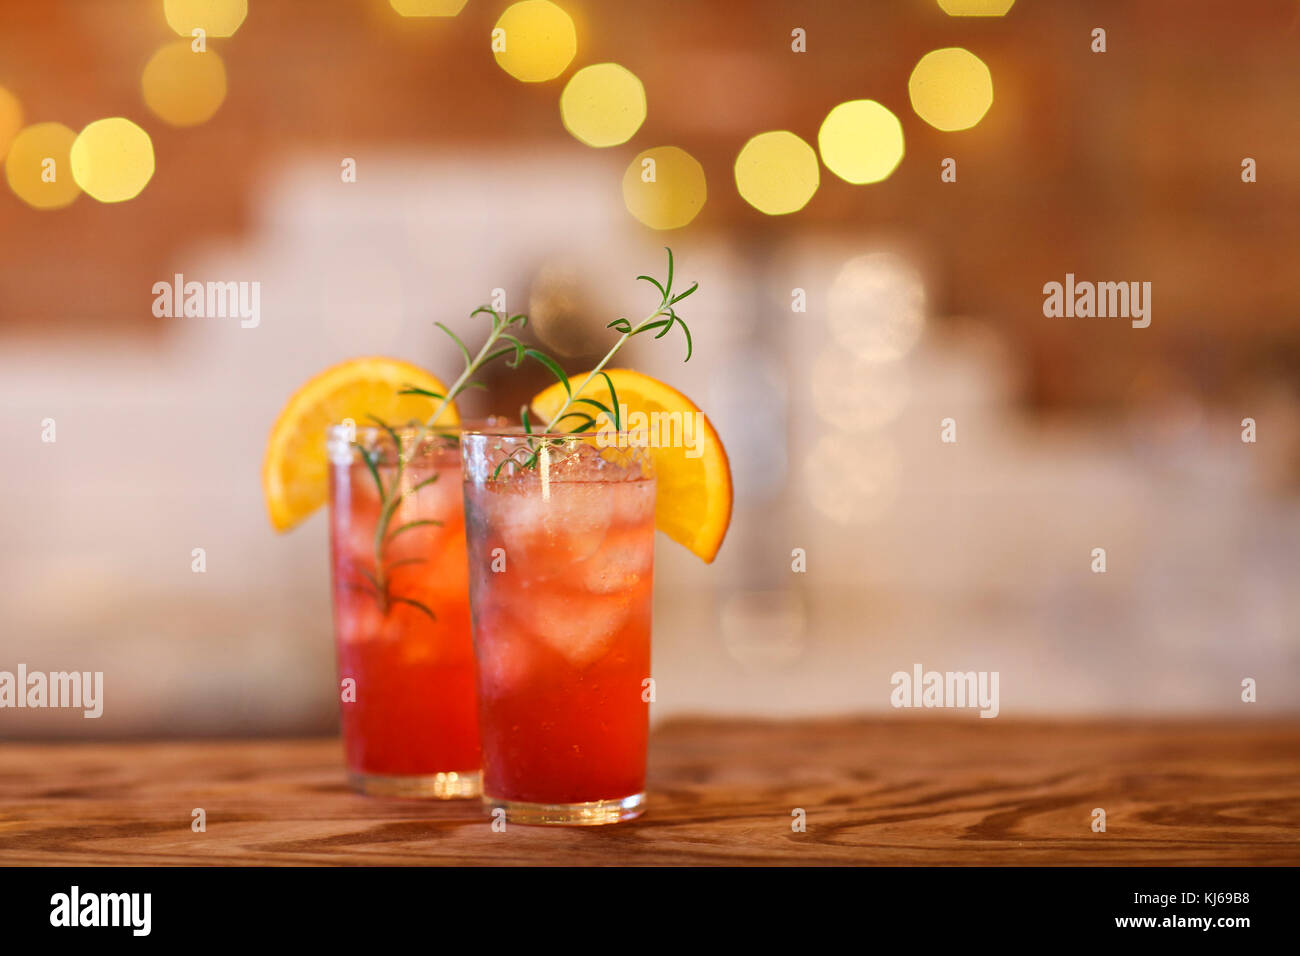 Due red bicchieri da cocktail sul bar in legno counter Foto Stock